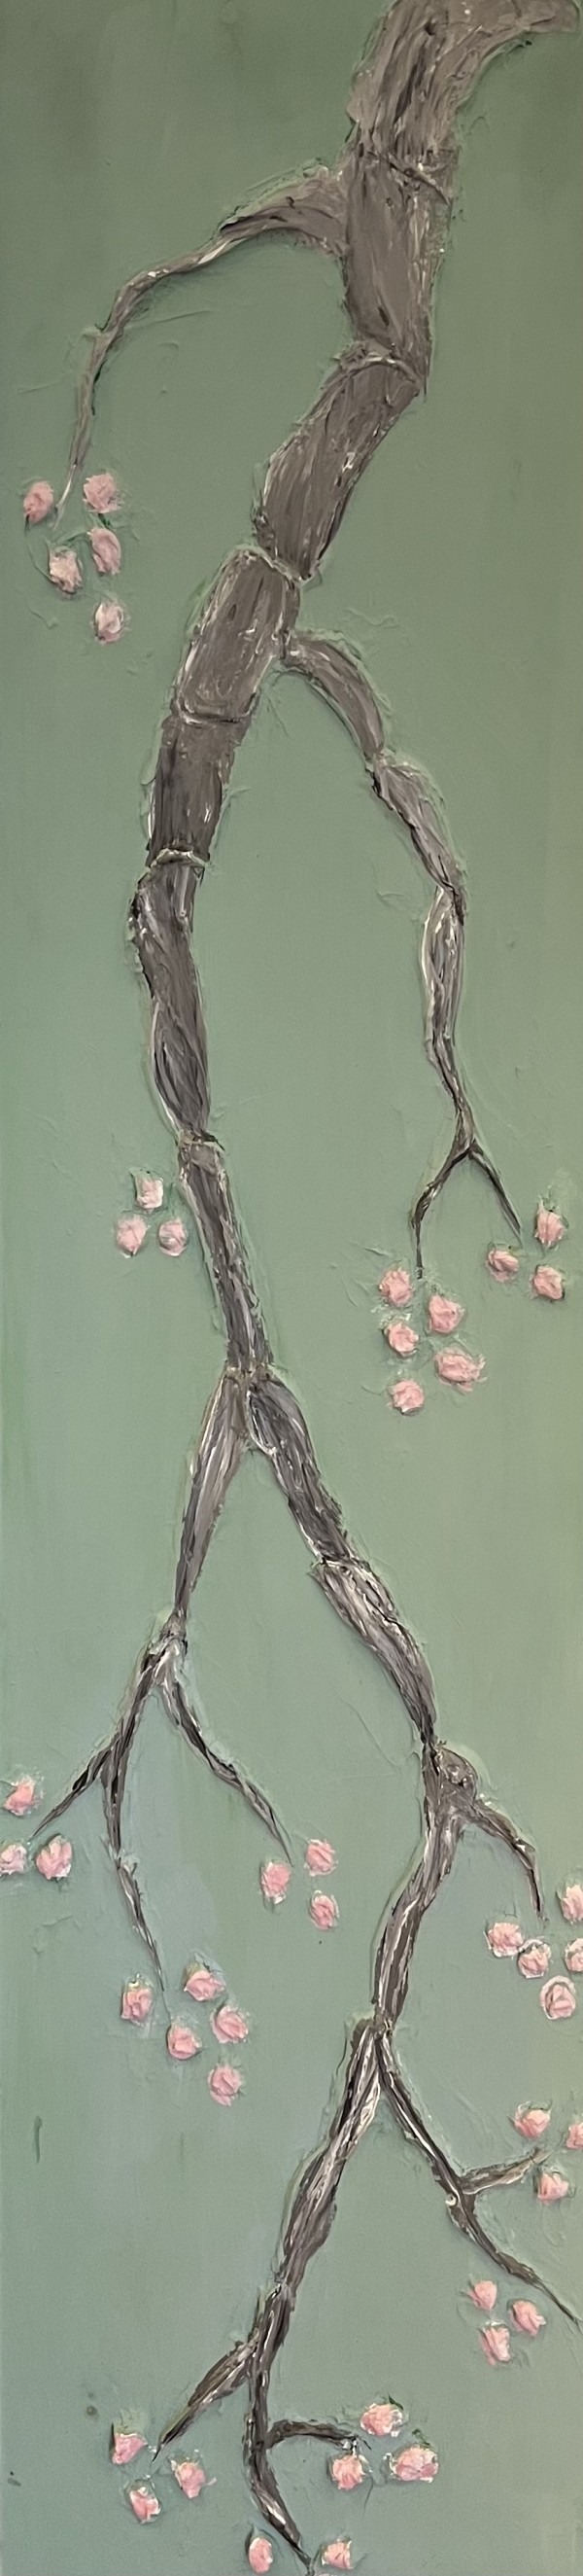 Cherry Blossoms by Day by Artnova Gallery